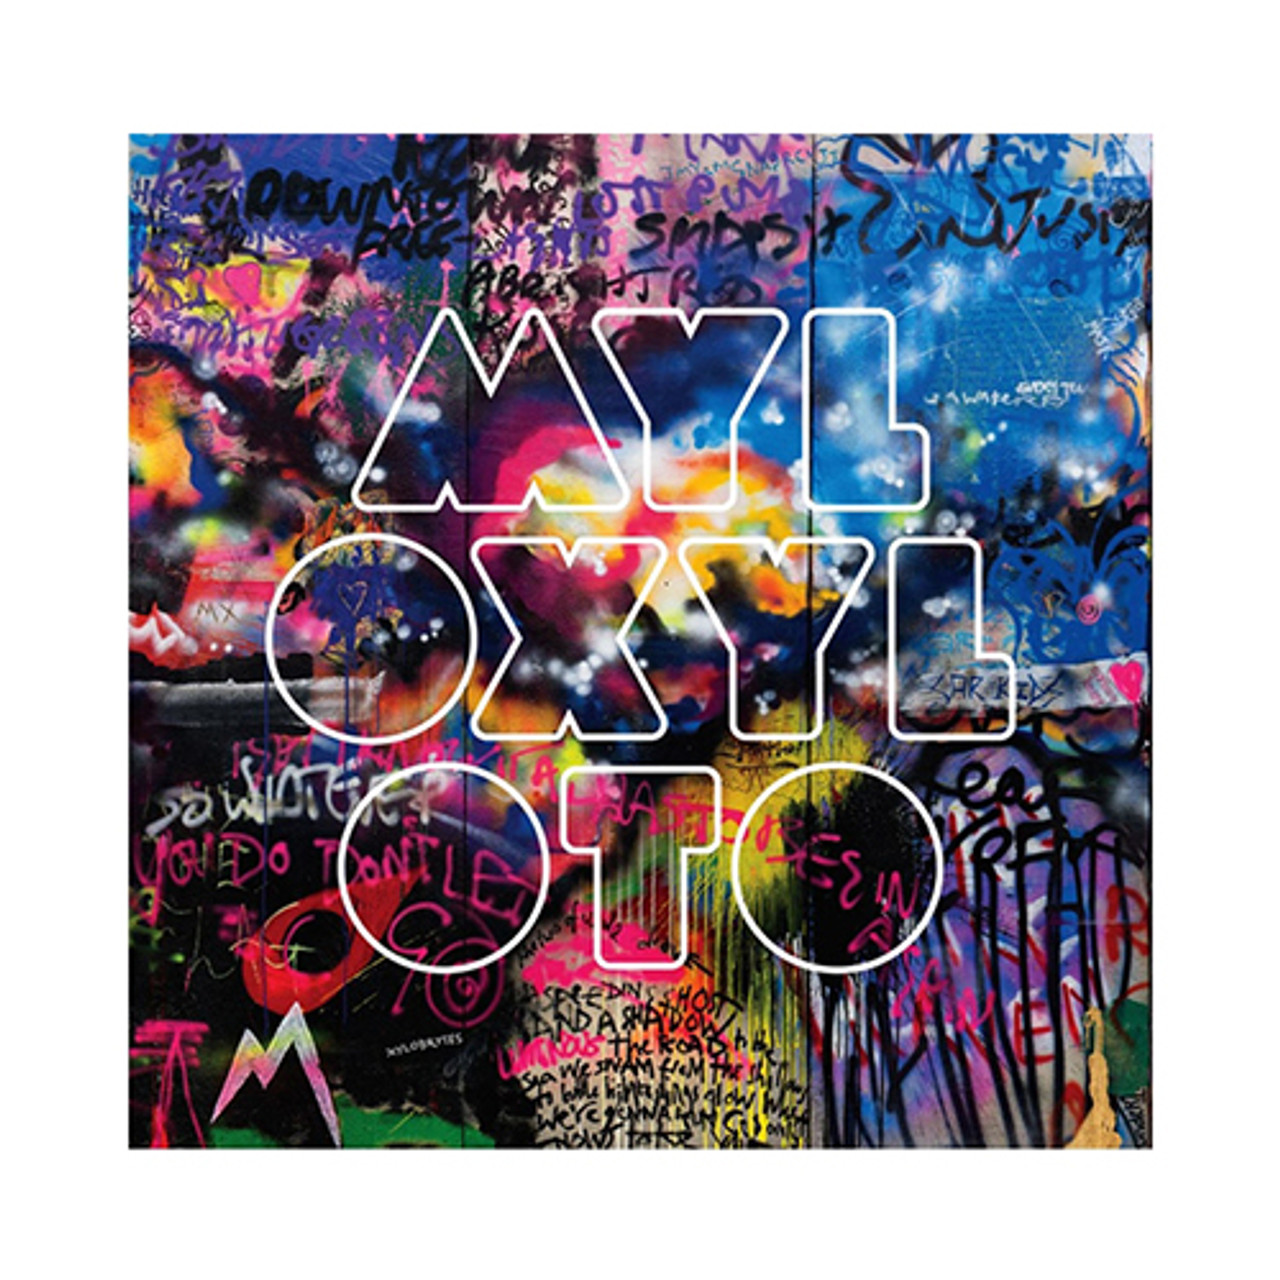 Coldplay - Mylo Xyloto (180G Vinyl LP)